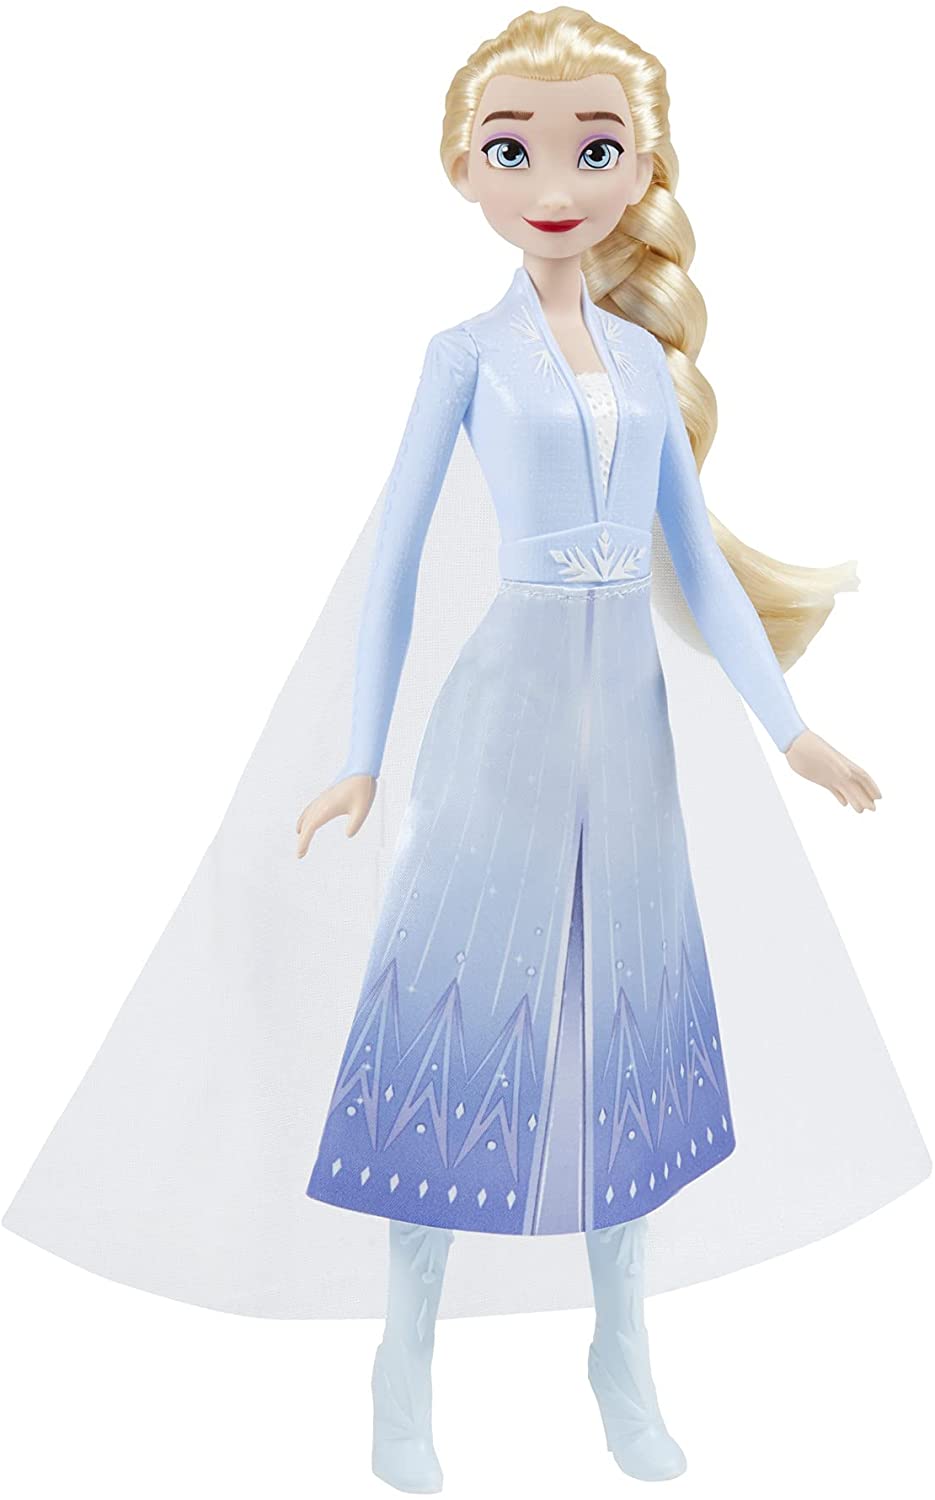 Disney F0796 2 Elsa Frozen Shimmer modepop, rok, schoenen en lang blond haar, speelgoed voor kinderen vanaf 3 jaar